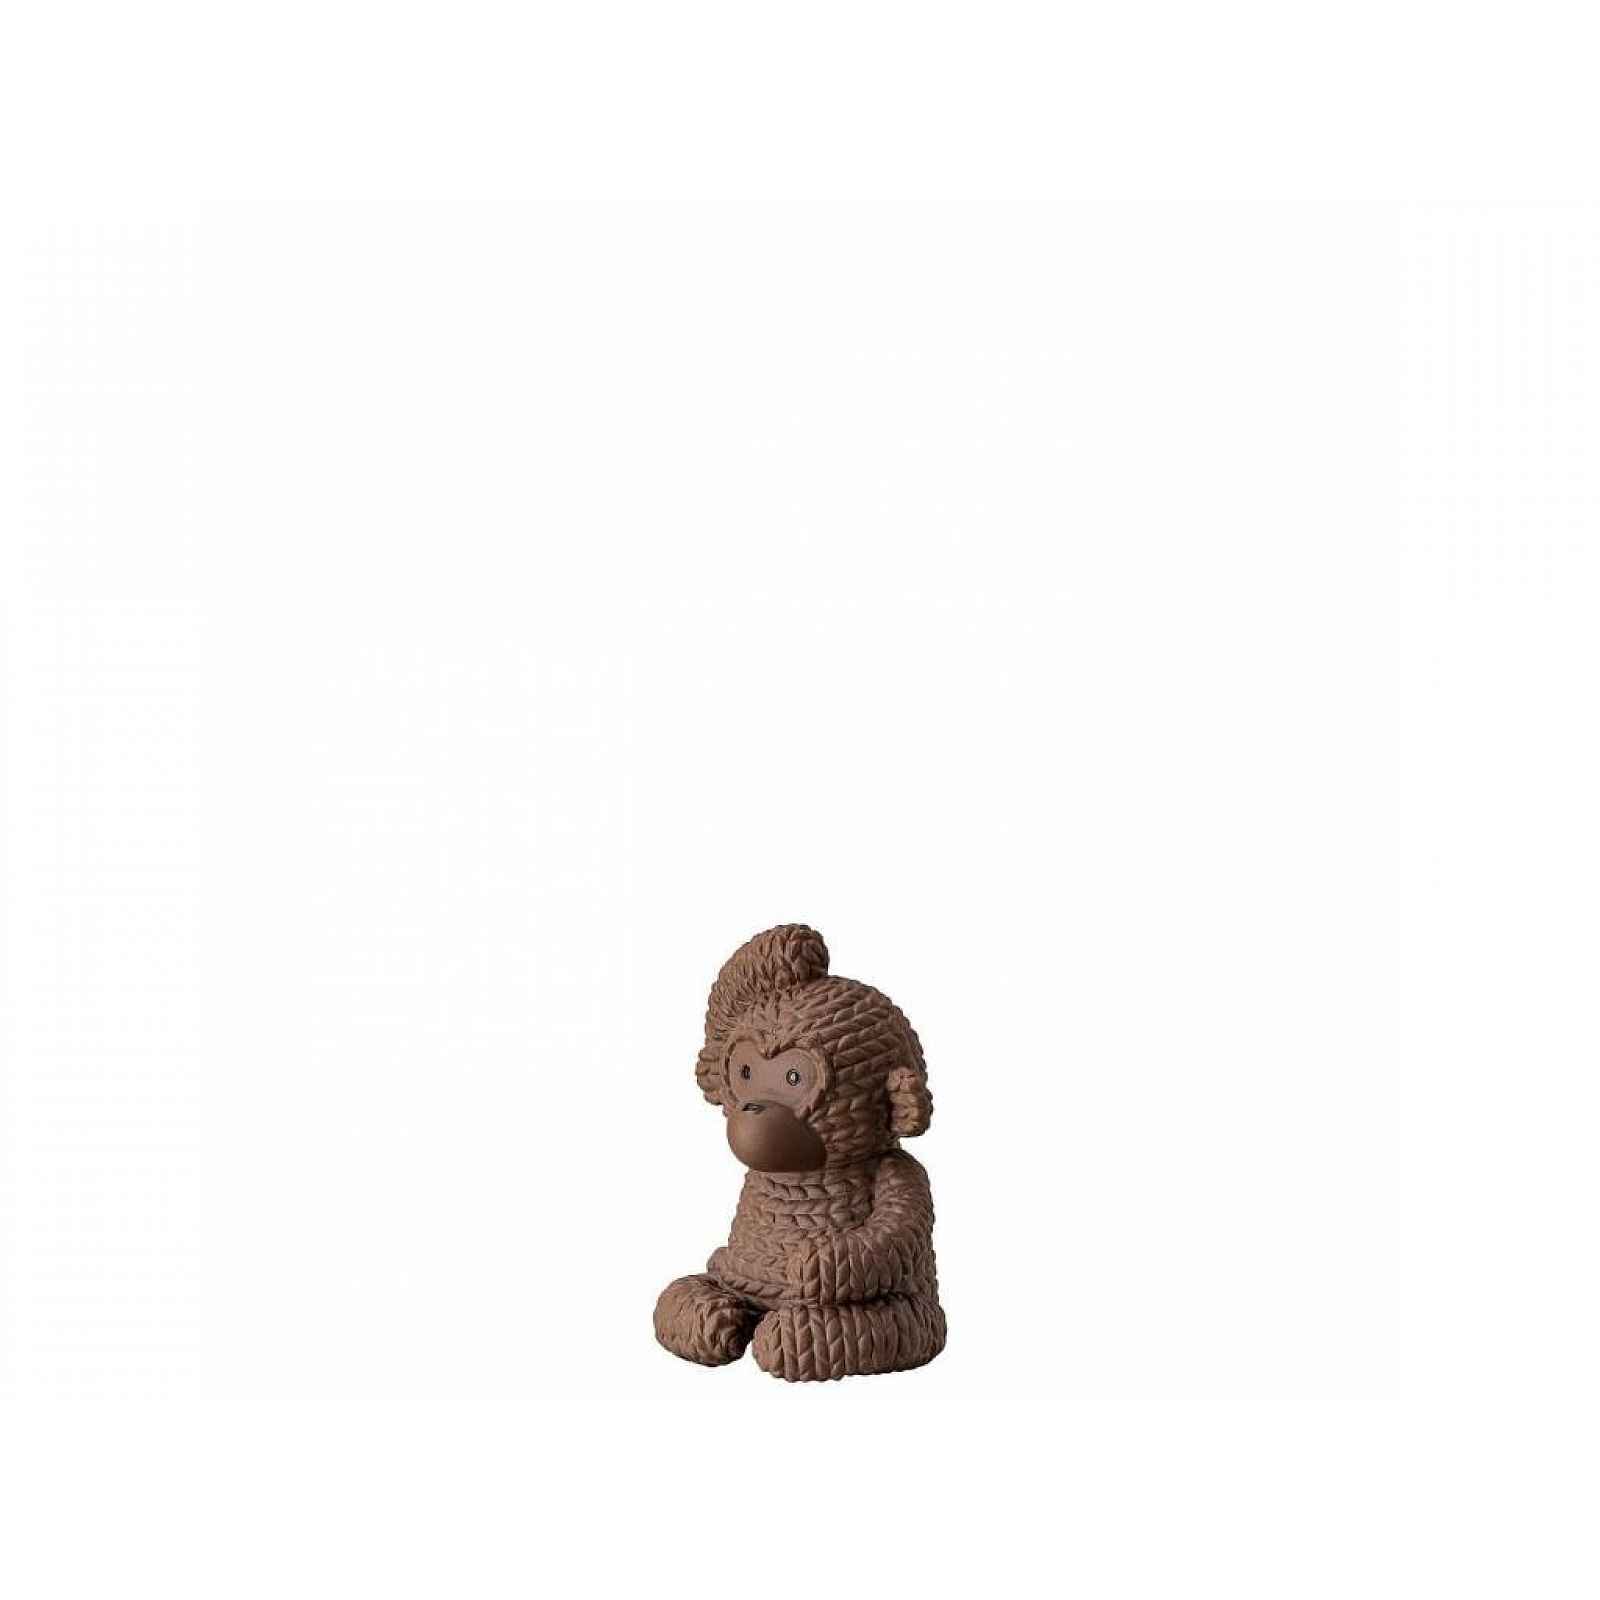 Moderní dekorace opice Gordon Rosenthal Pets, malá, 6,5 cm